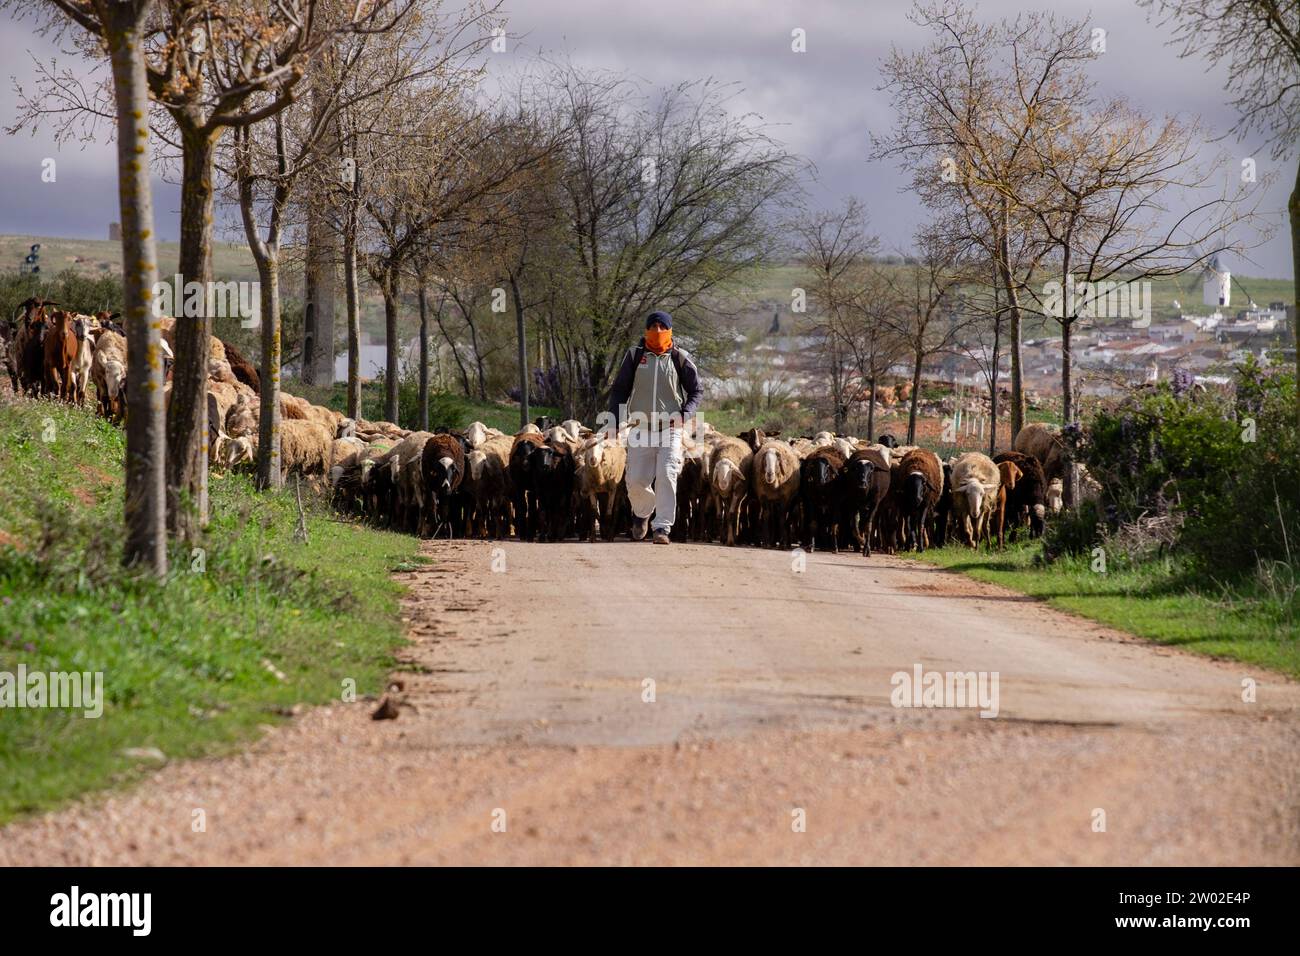 pastor con su rebaño, Campo de Criptana, provincia de Ciudad Real, Castilla-La Mancha, Spain Stock Photo